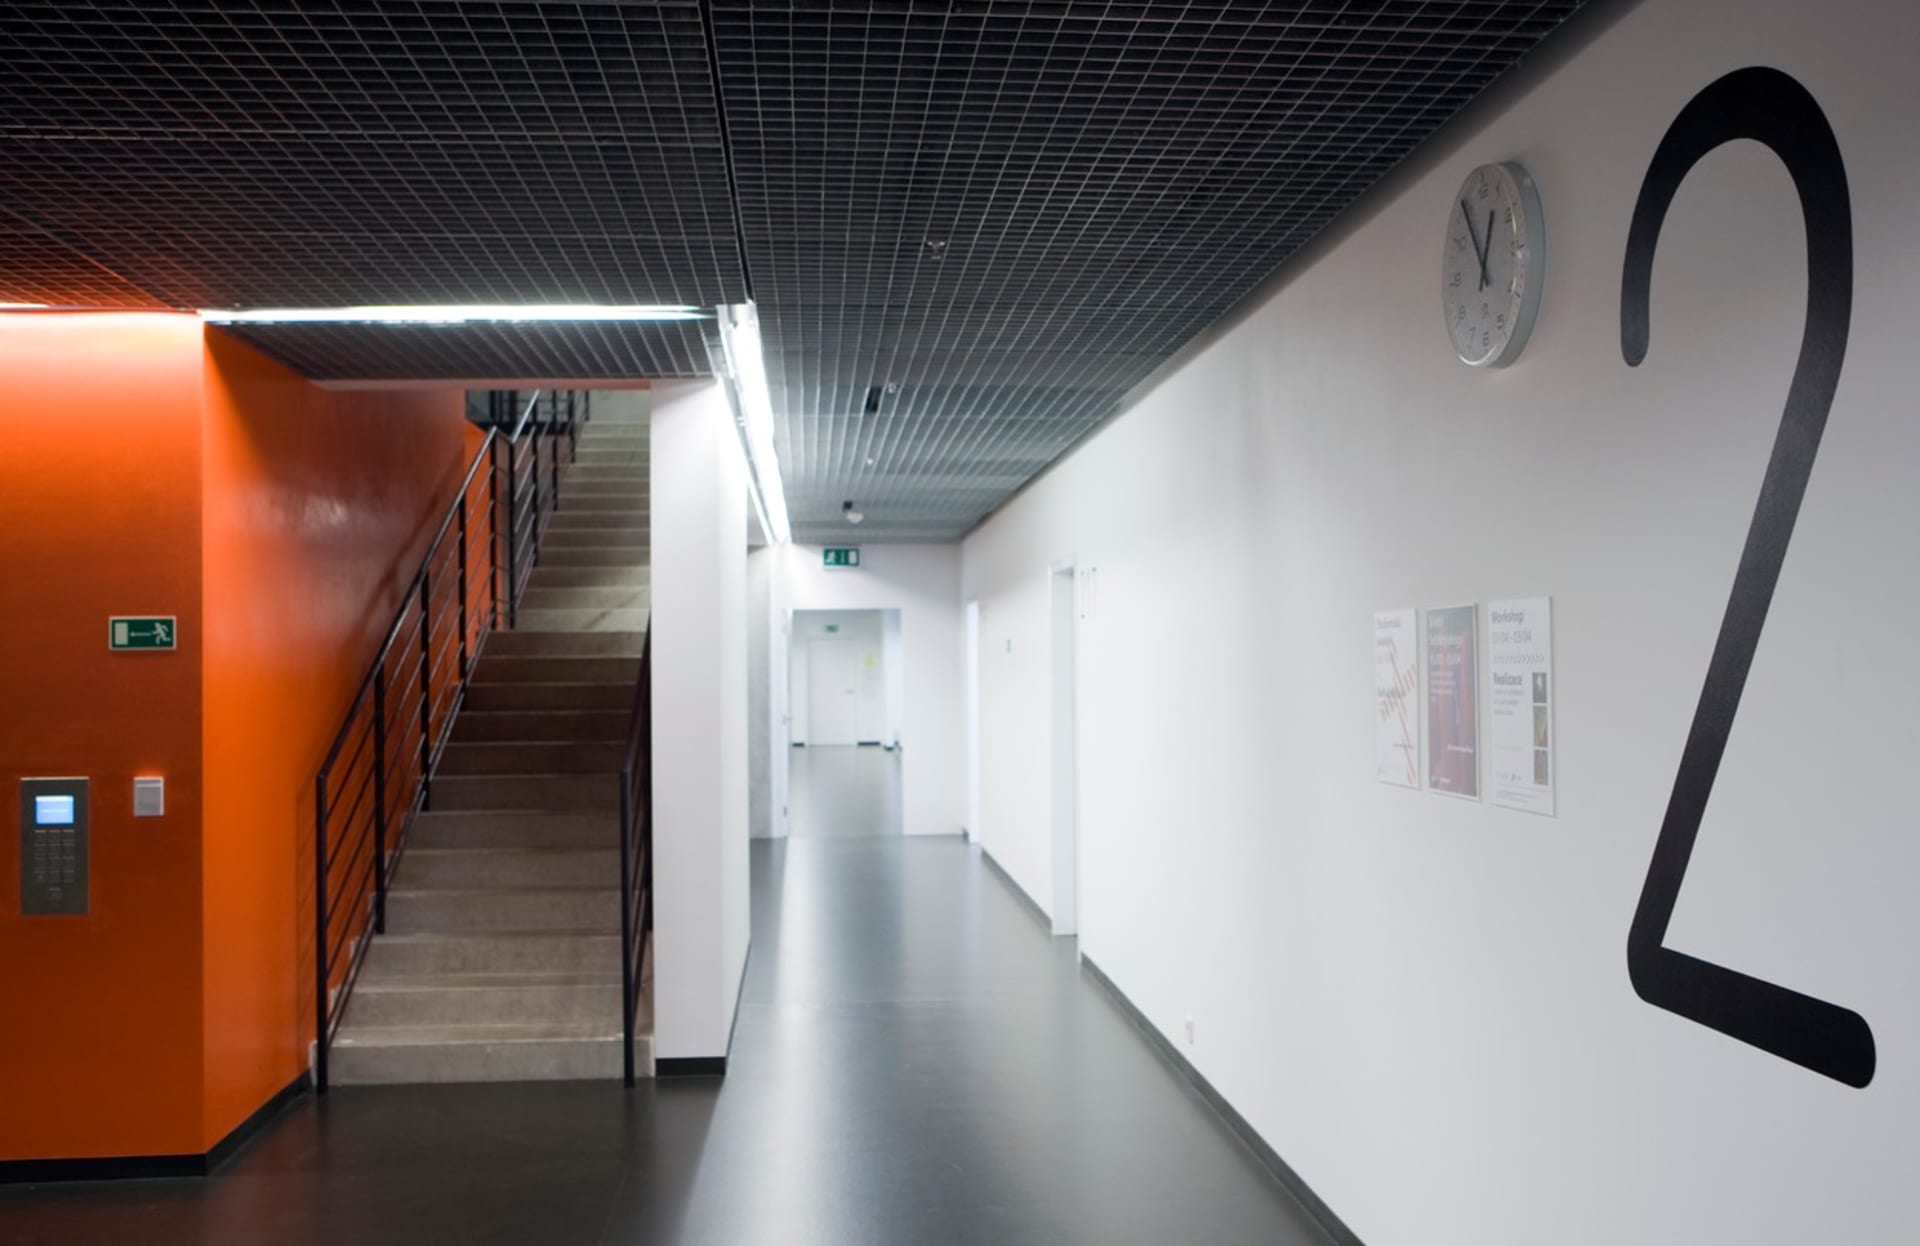 Poslední velkou realizací architektky Aleny Šrámkové byla budova nové fakulty architektury ČVUT v Praze